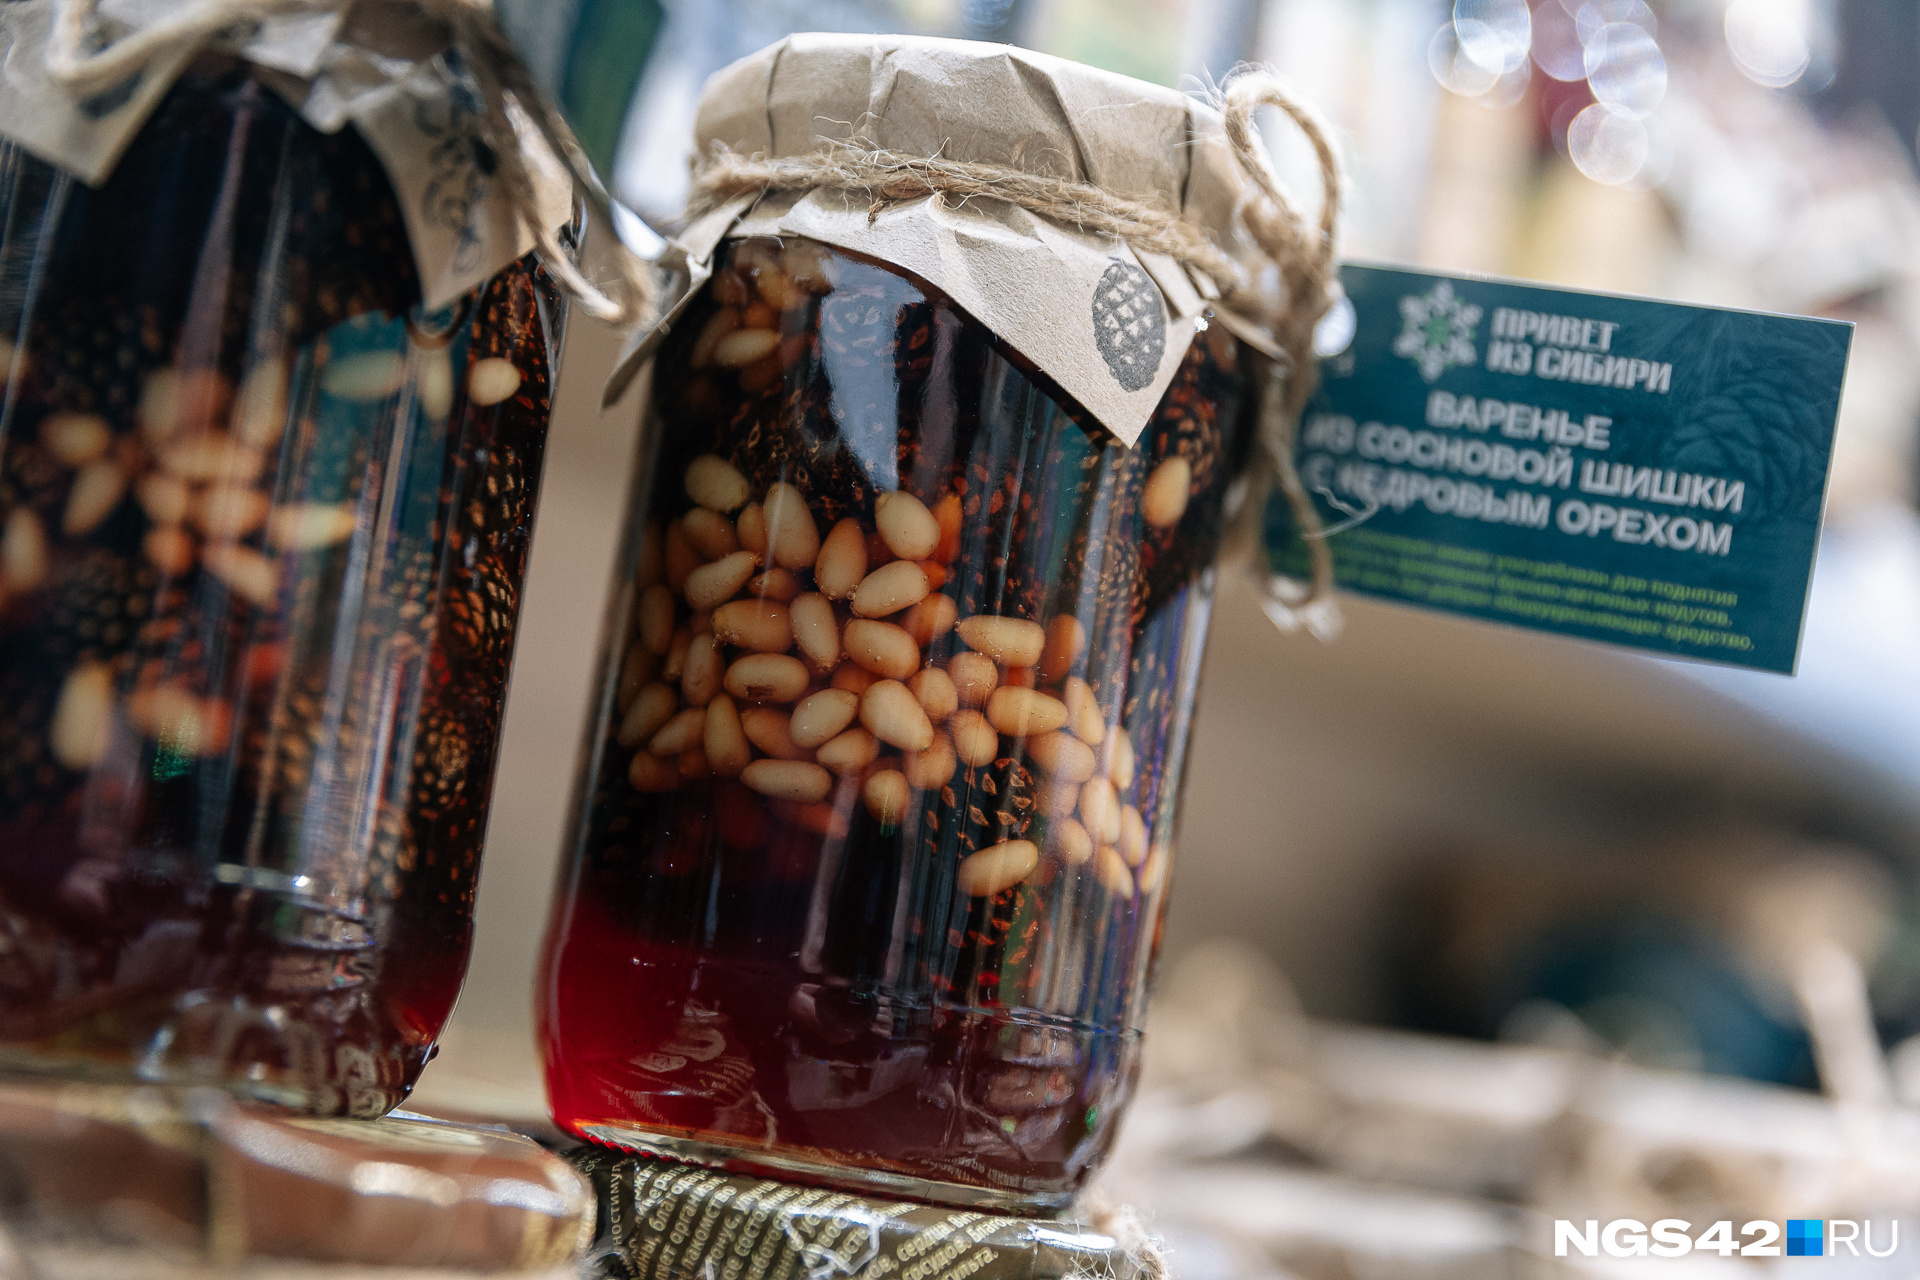 Из Кемерова можно привезти кедровые орехи как в чистом виде, так и в составе сладостей